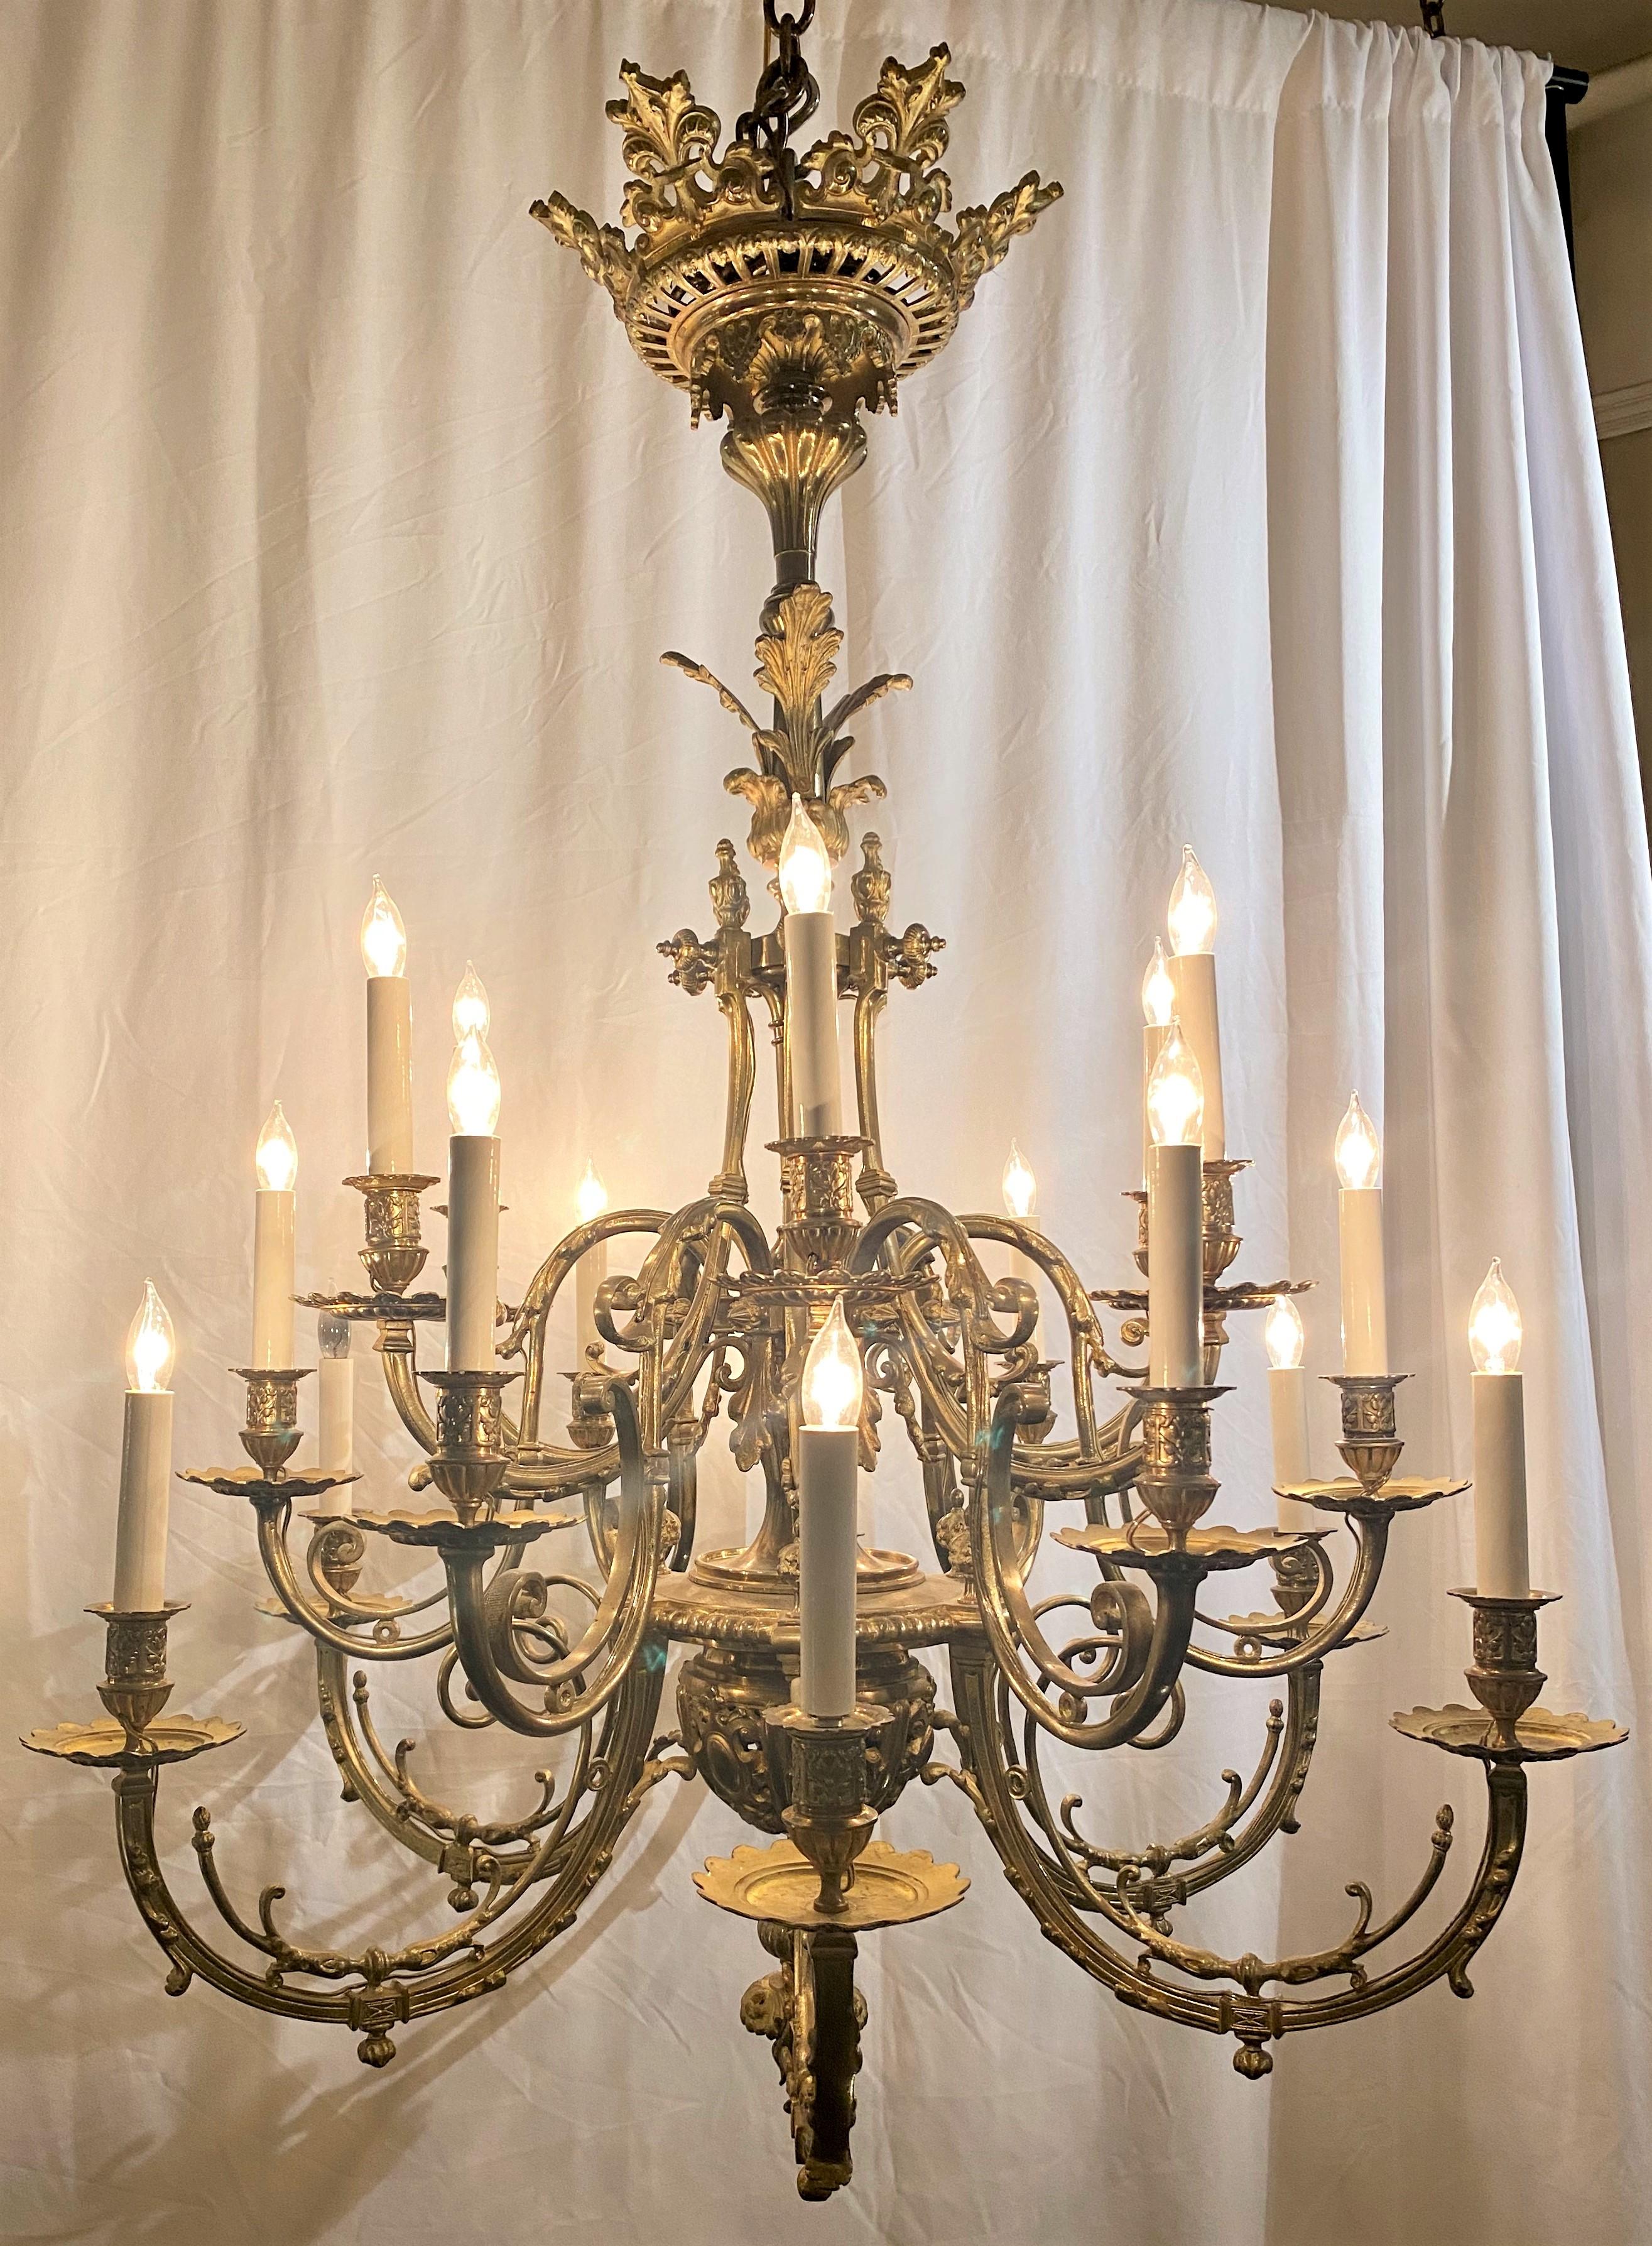 Antique French Renaissance style bronze D'Ore chandelier, circa 1860-1880.
CHB005.